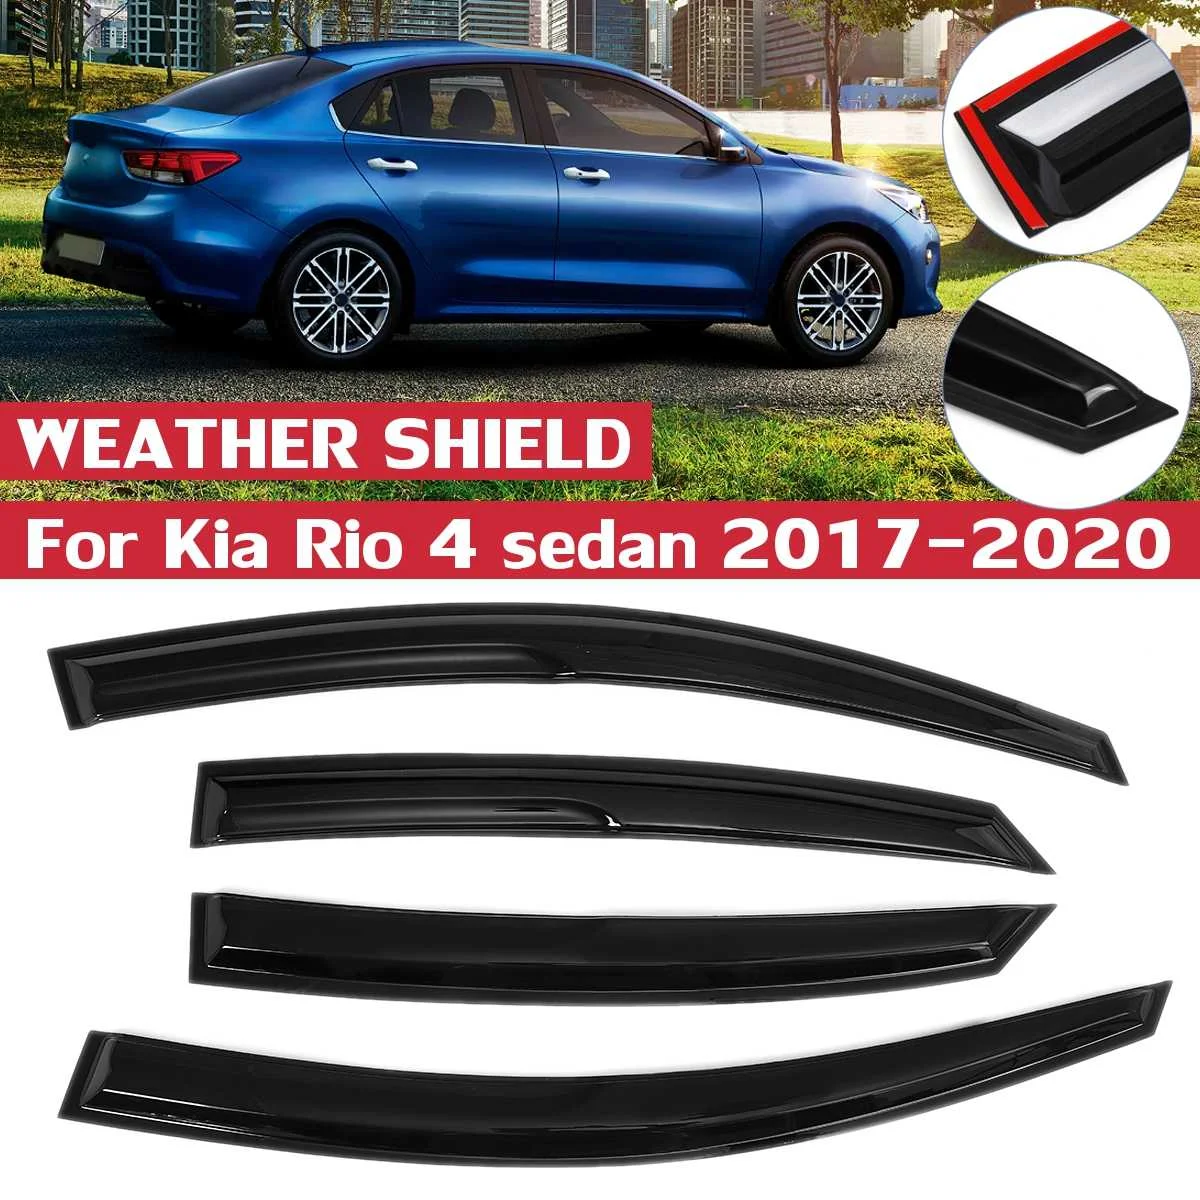 

4 шт. дефлекторы боковых окон для KiaRio 4 седан 2017 2018 2019 2020 козырек для окон защита от дождя и солнца ветрозащитные дефлекторы